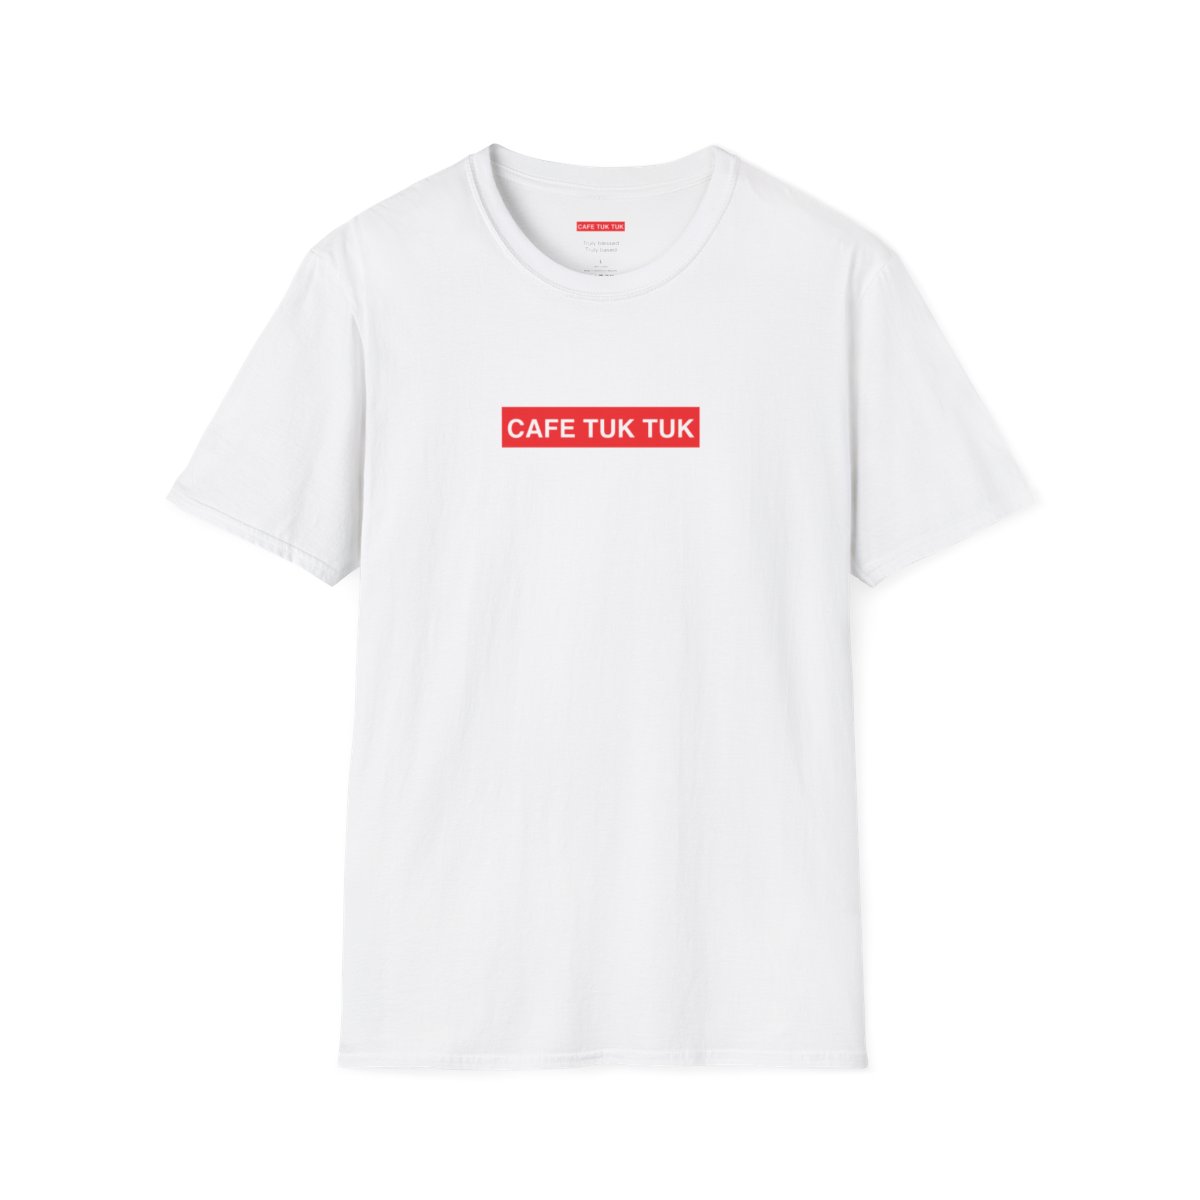 Single Sided Unisex Softstyle T-Shirt product thumbnail image